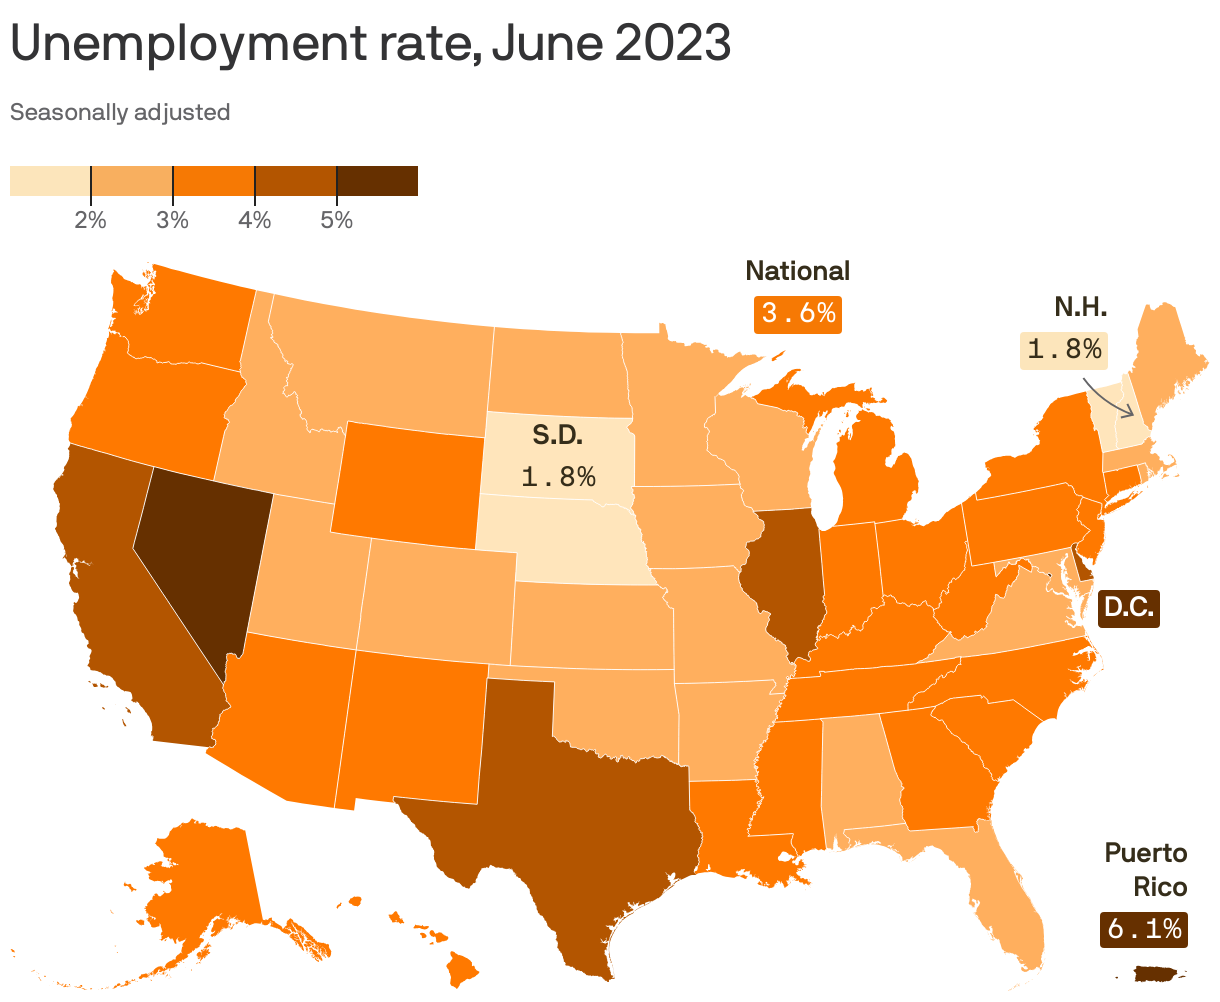 Unemployment rate, June 2023